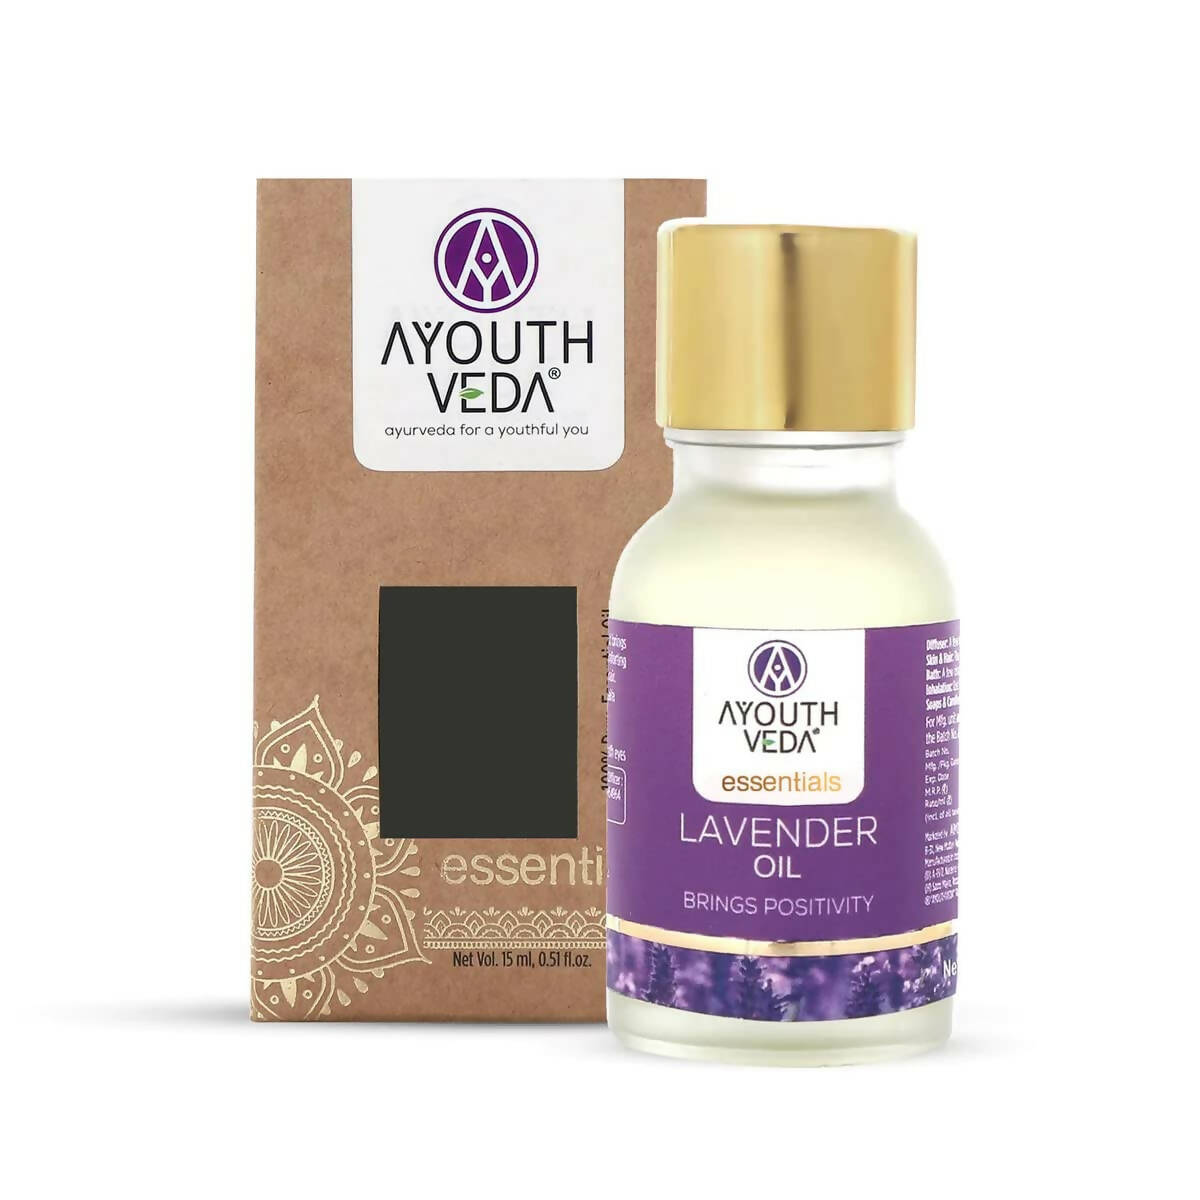 Ayouthveda Essentials Lavender Oil - BUDNEN